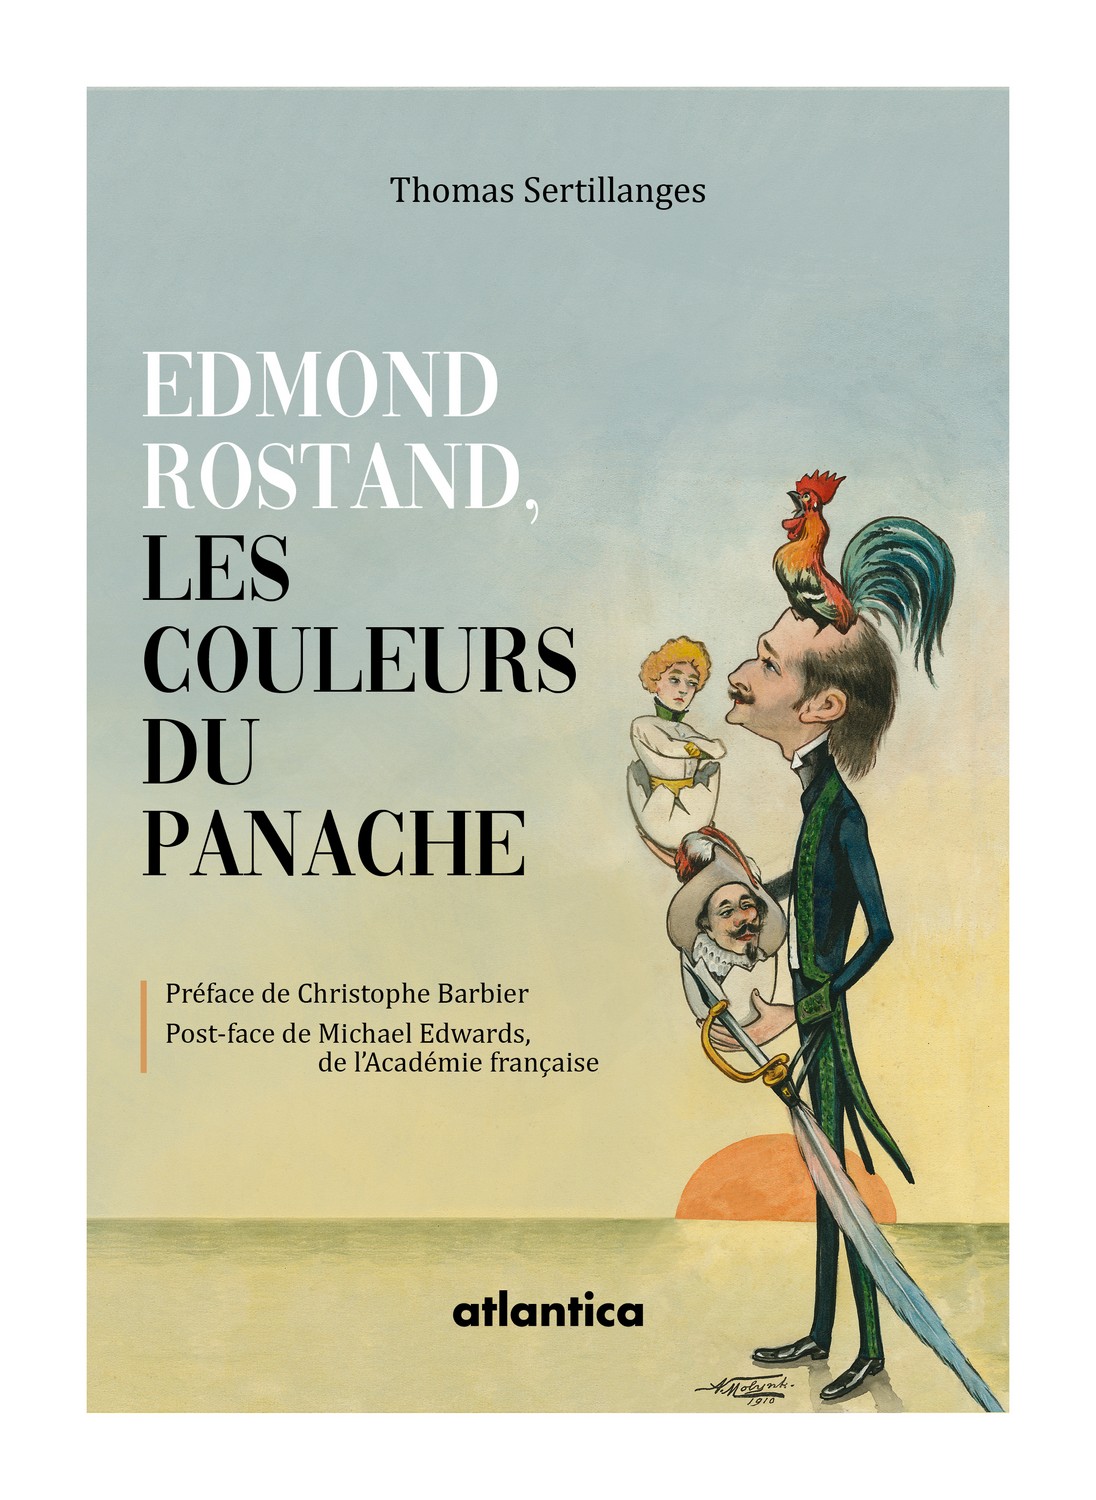 Edmond Rostand couleurs du panache